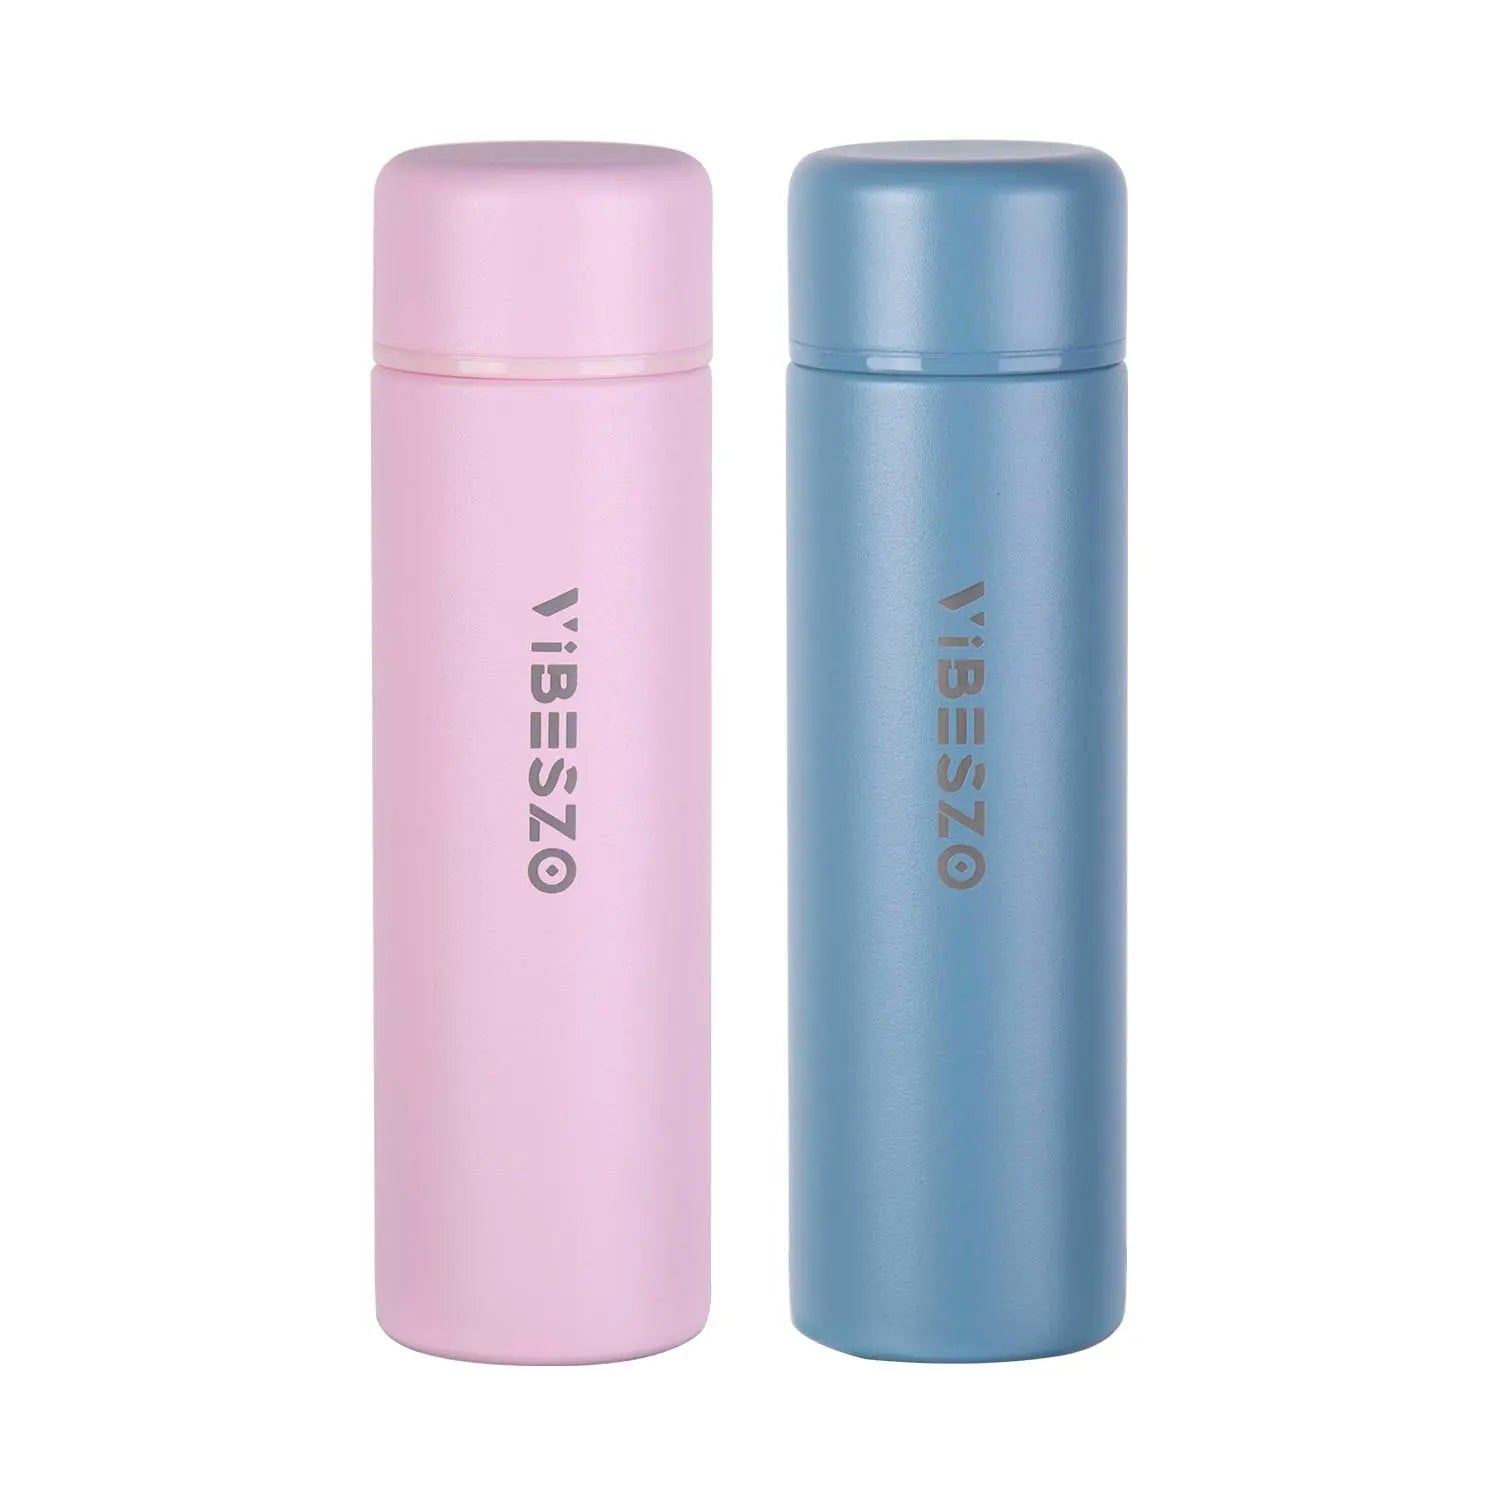 Vibeszo 不鏽鋼真空保溫瓶套裝150ml x 2件 粉紅色Pink & 藍色Blue 白色White & 綠色Green